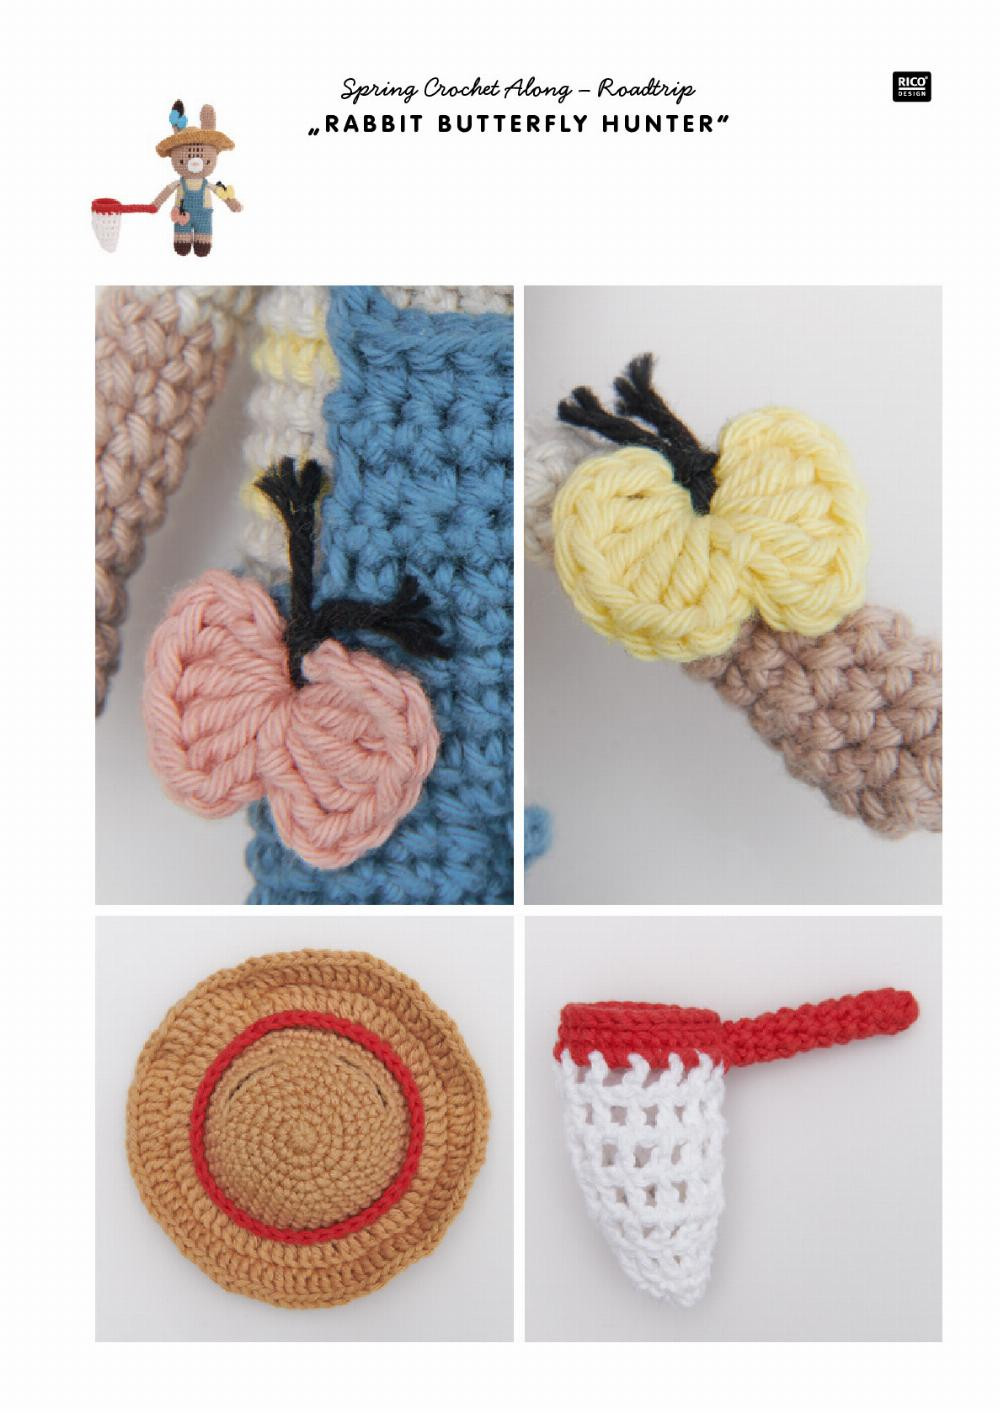 The lovely world of RICORUMI Spring Crochet Along – Roadtrip  RABBIT BUTTER FLY HUNTER